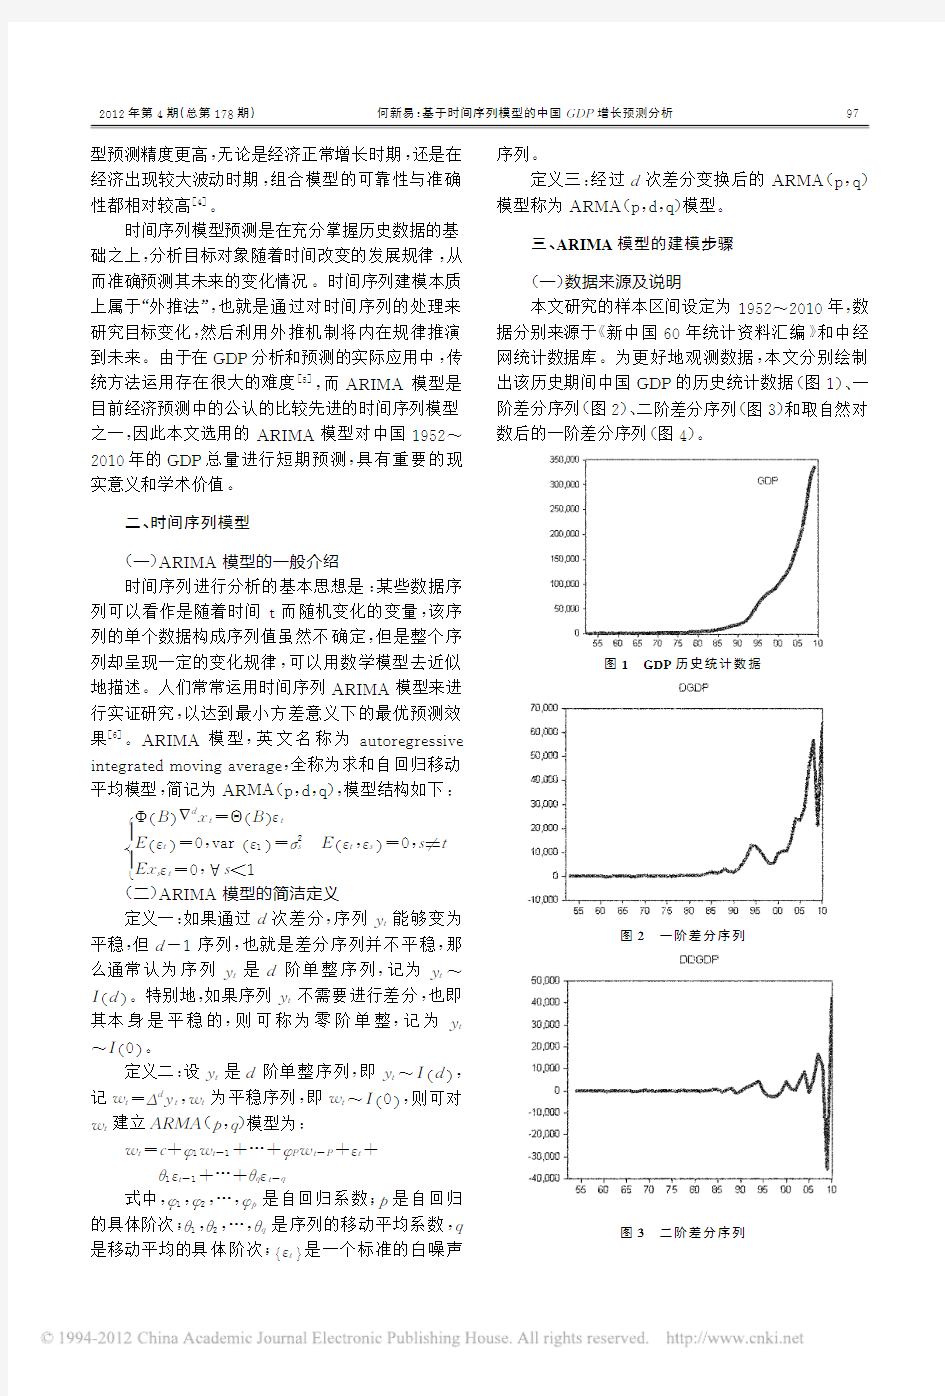 基于时间序列模型的中国GDP增长预测分析